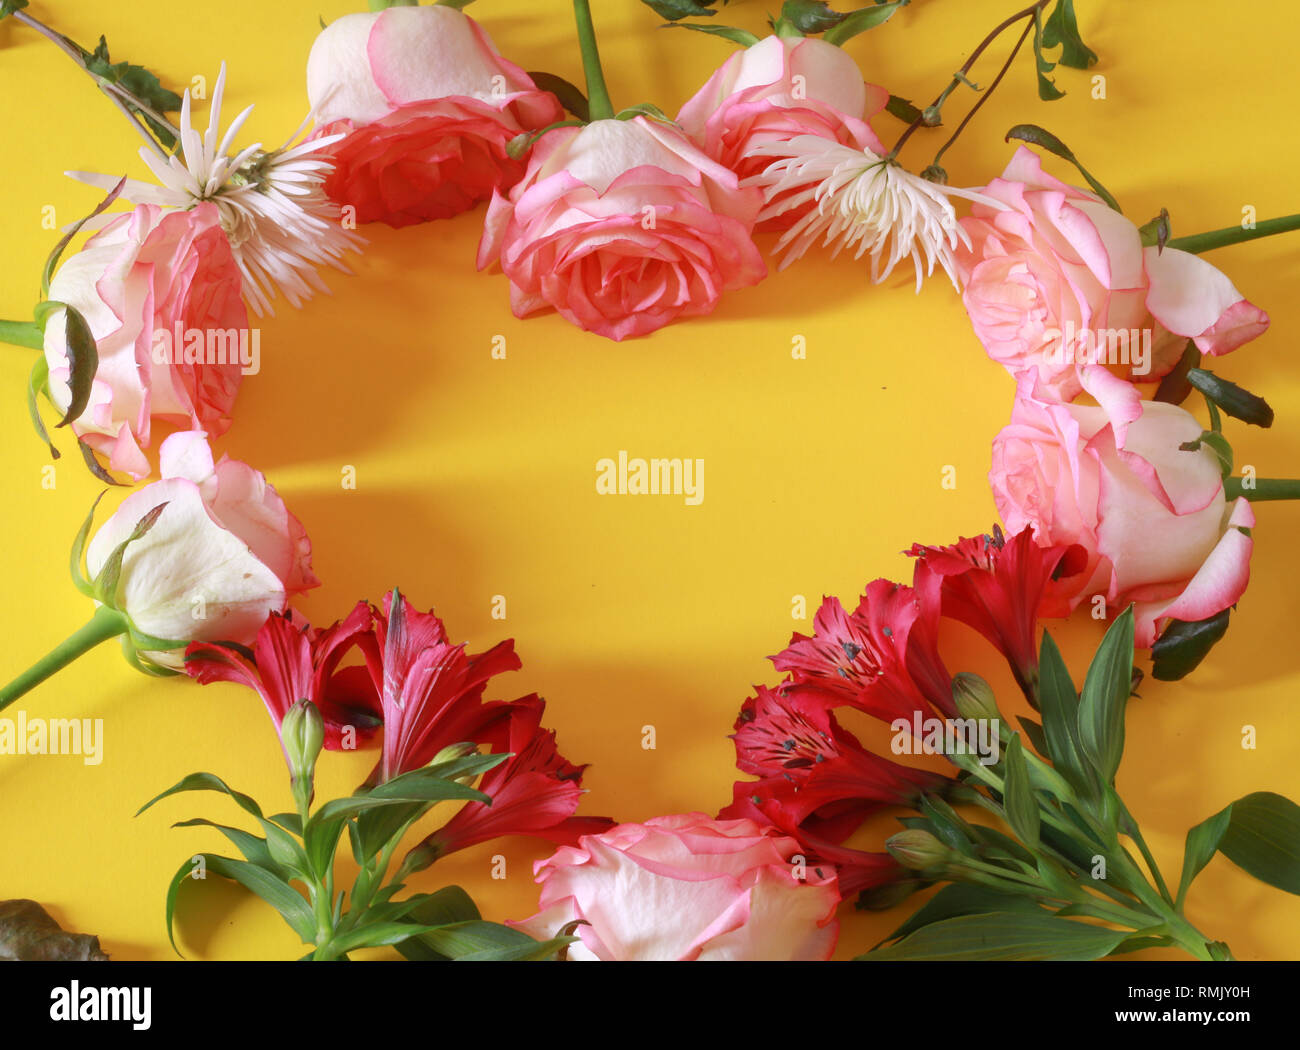 Arrangement de fleur avec l'écriture mignon sur un coeur Banque D'Images